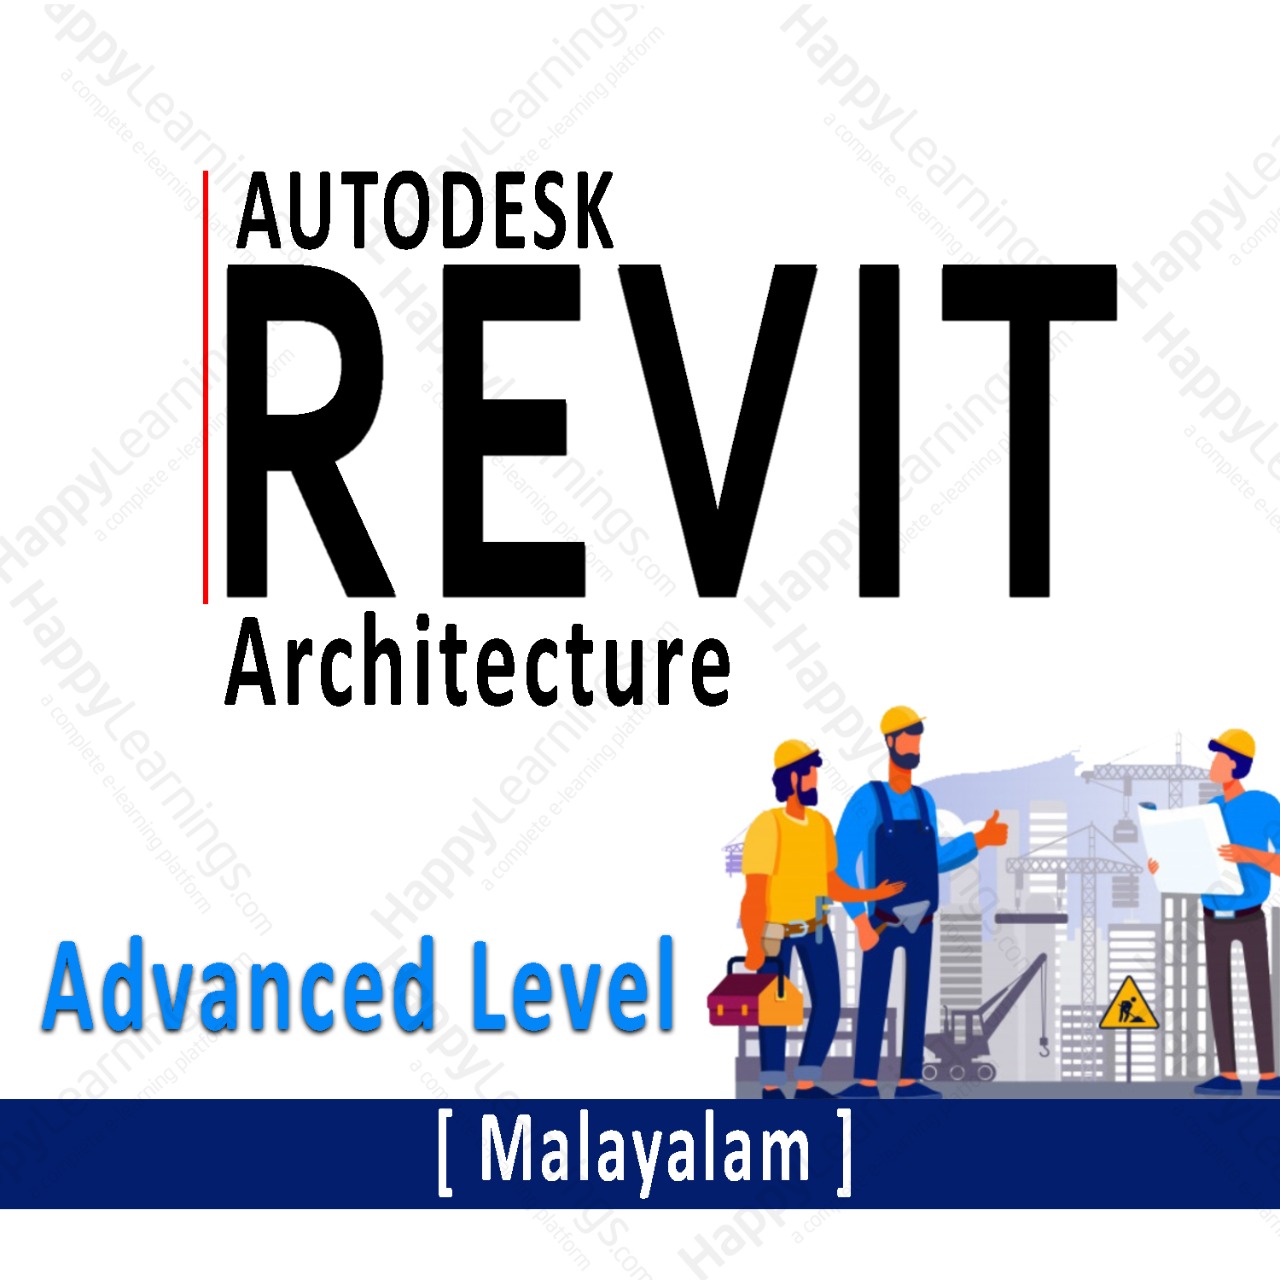 Autodesk Revit (Architecture) - Advanced